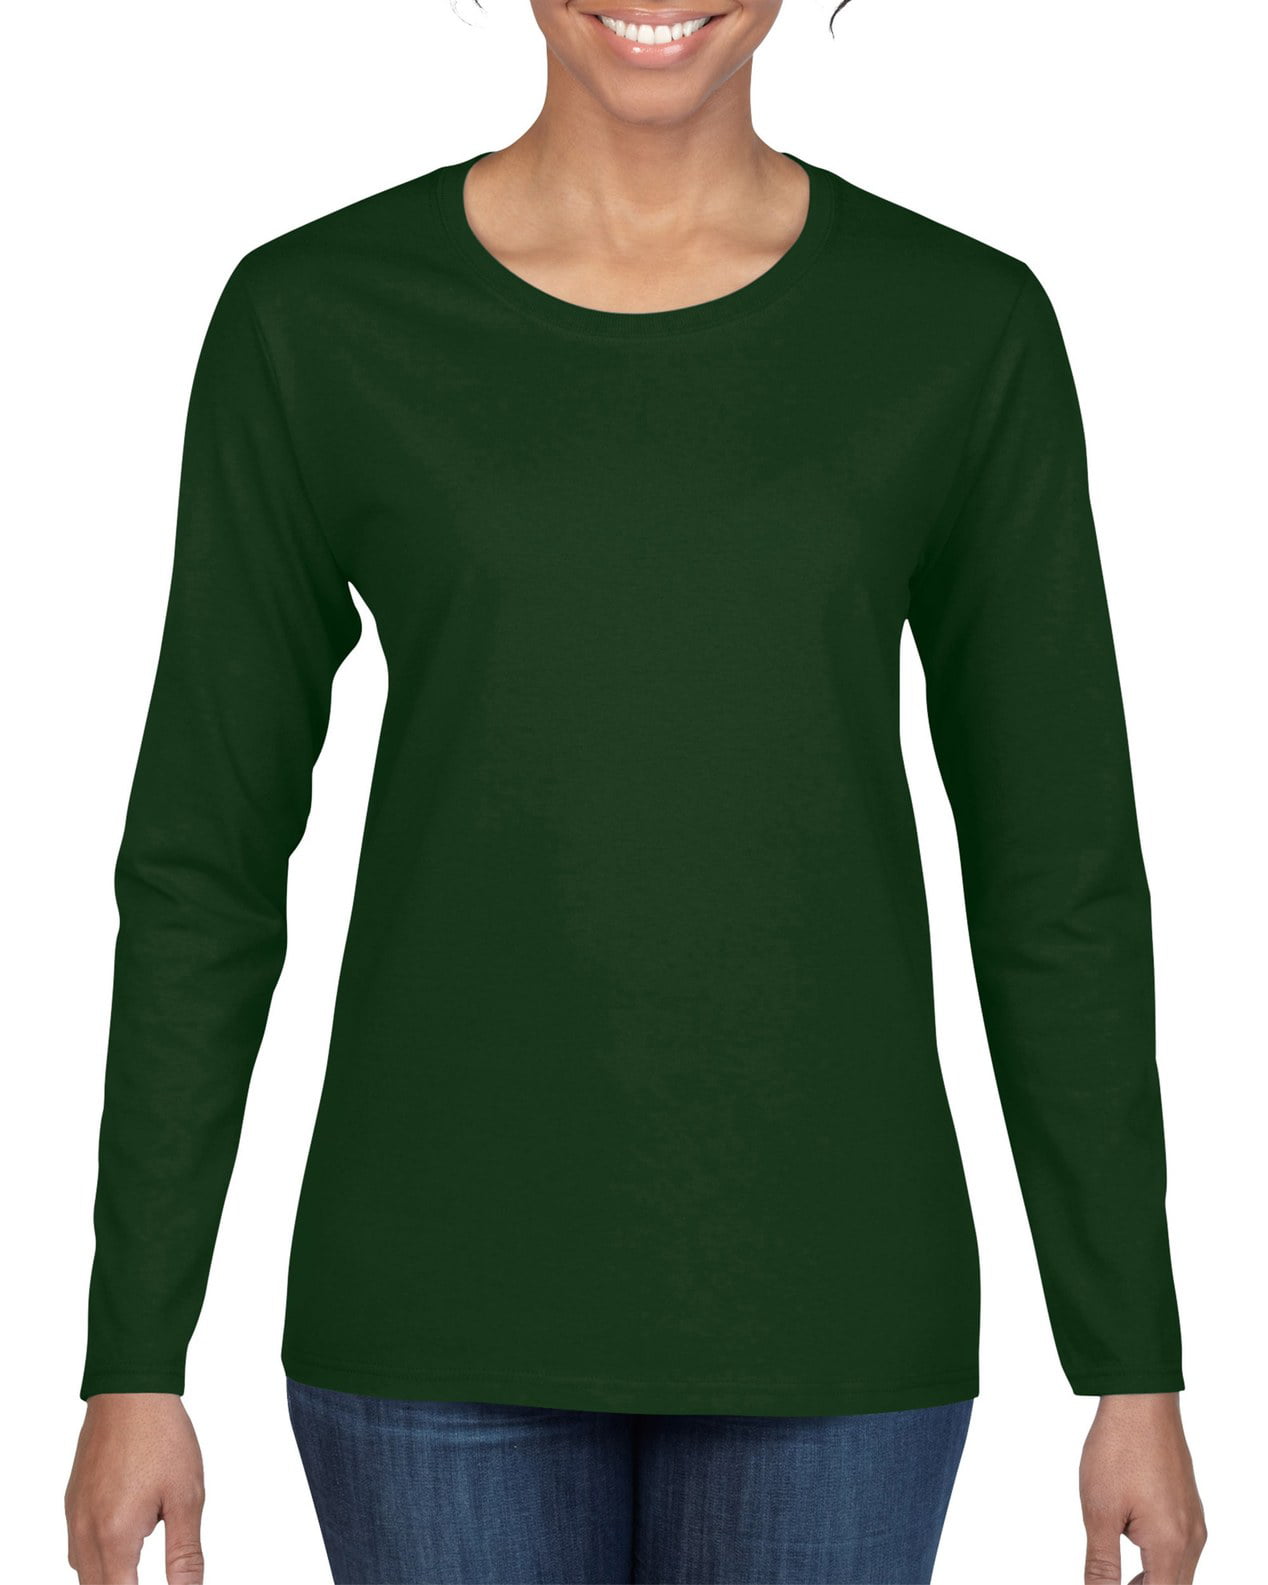 green long sleeve t shirt